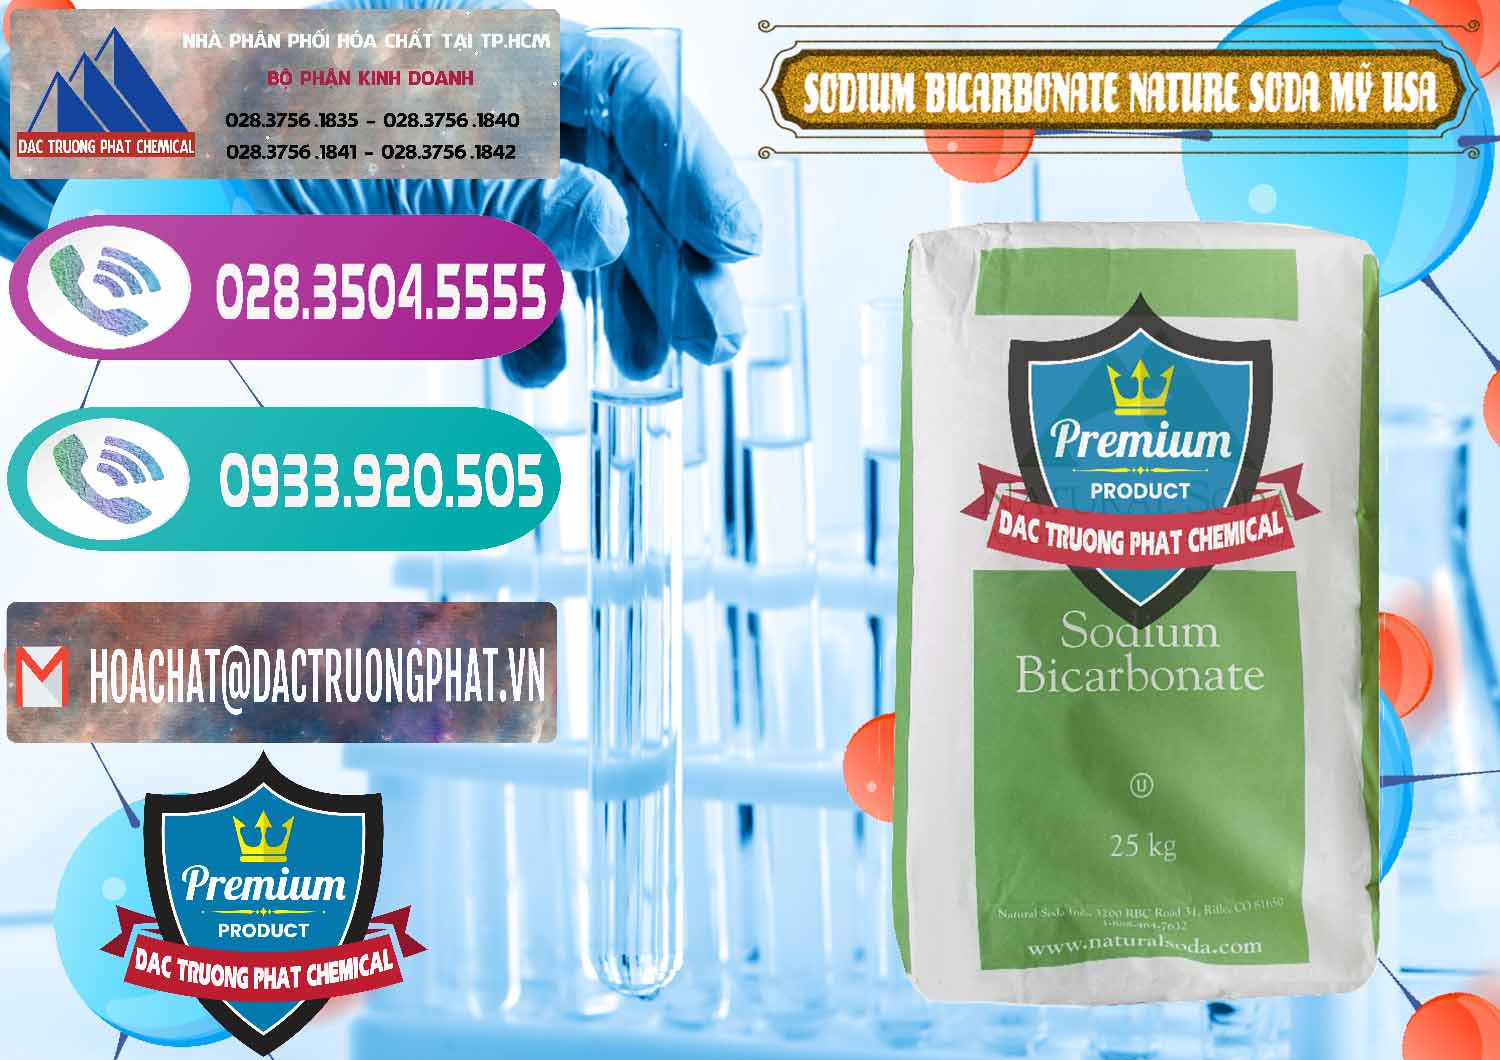 Nơi bán ( cung cấp ) Sodium Bicarbonate – Bicar NaHCO3 Food Grade Nature Soda Mỹ USA - 0256 - Công ty chuyên bán & phân phối hóa chất tại TP.HCM - hoachatxulynuoc.com